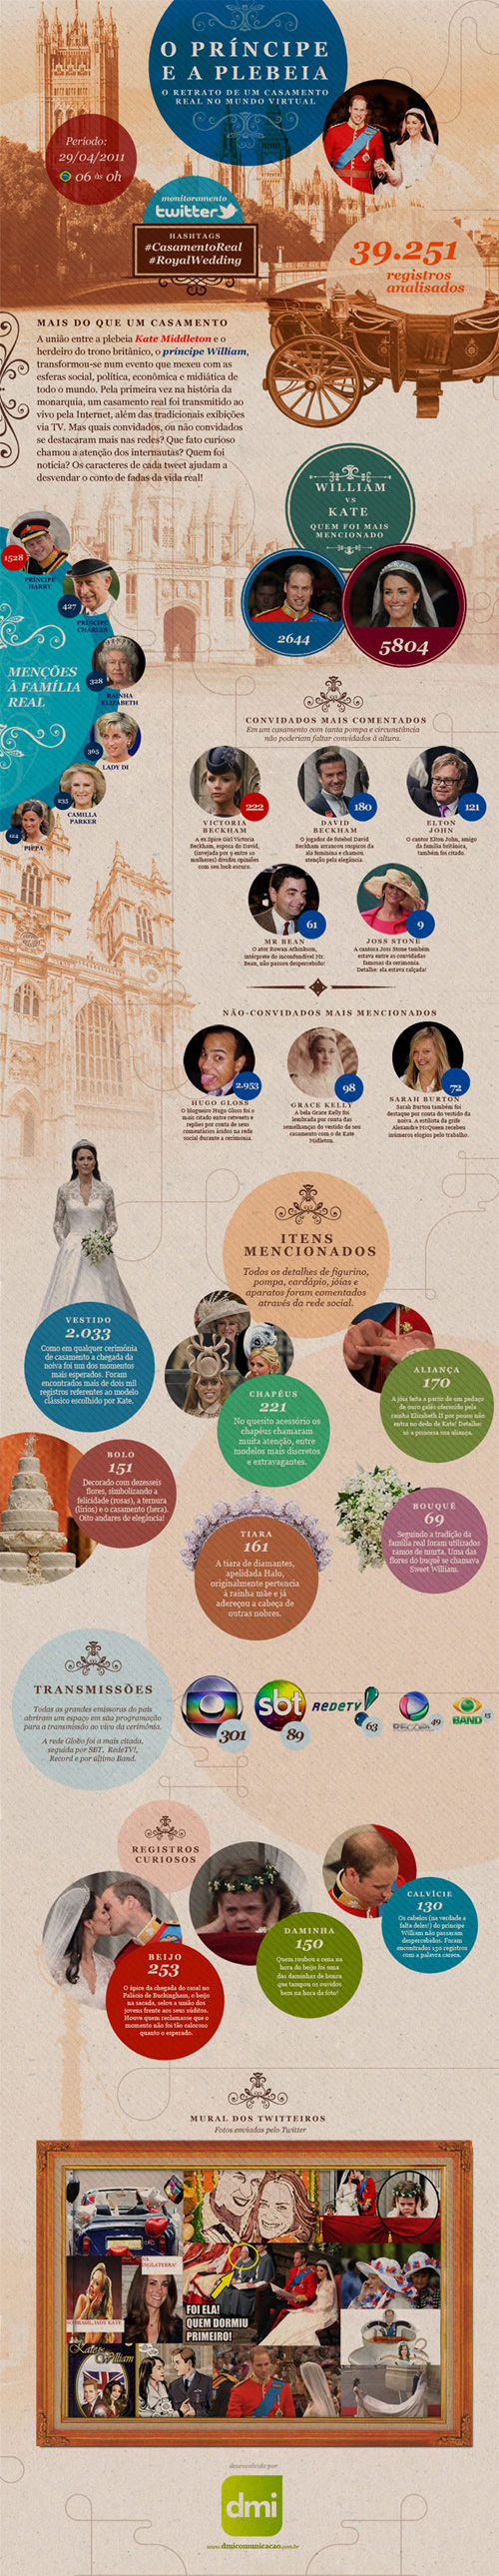 O infogrÃ¡fico do casamento real